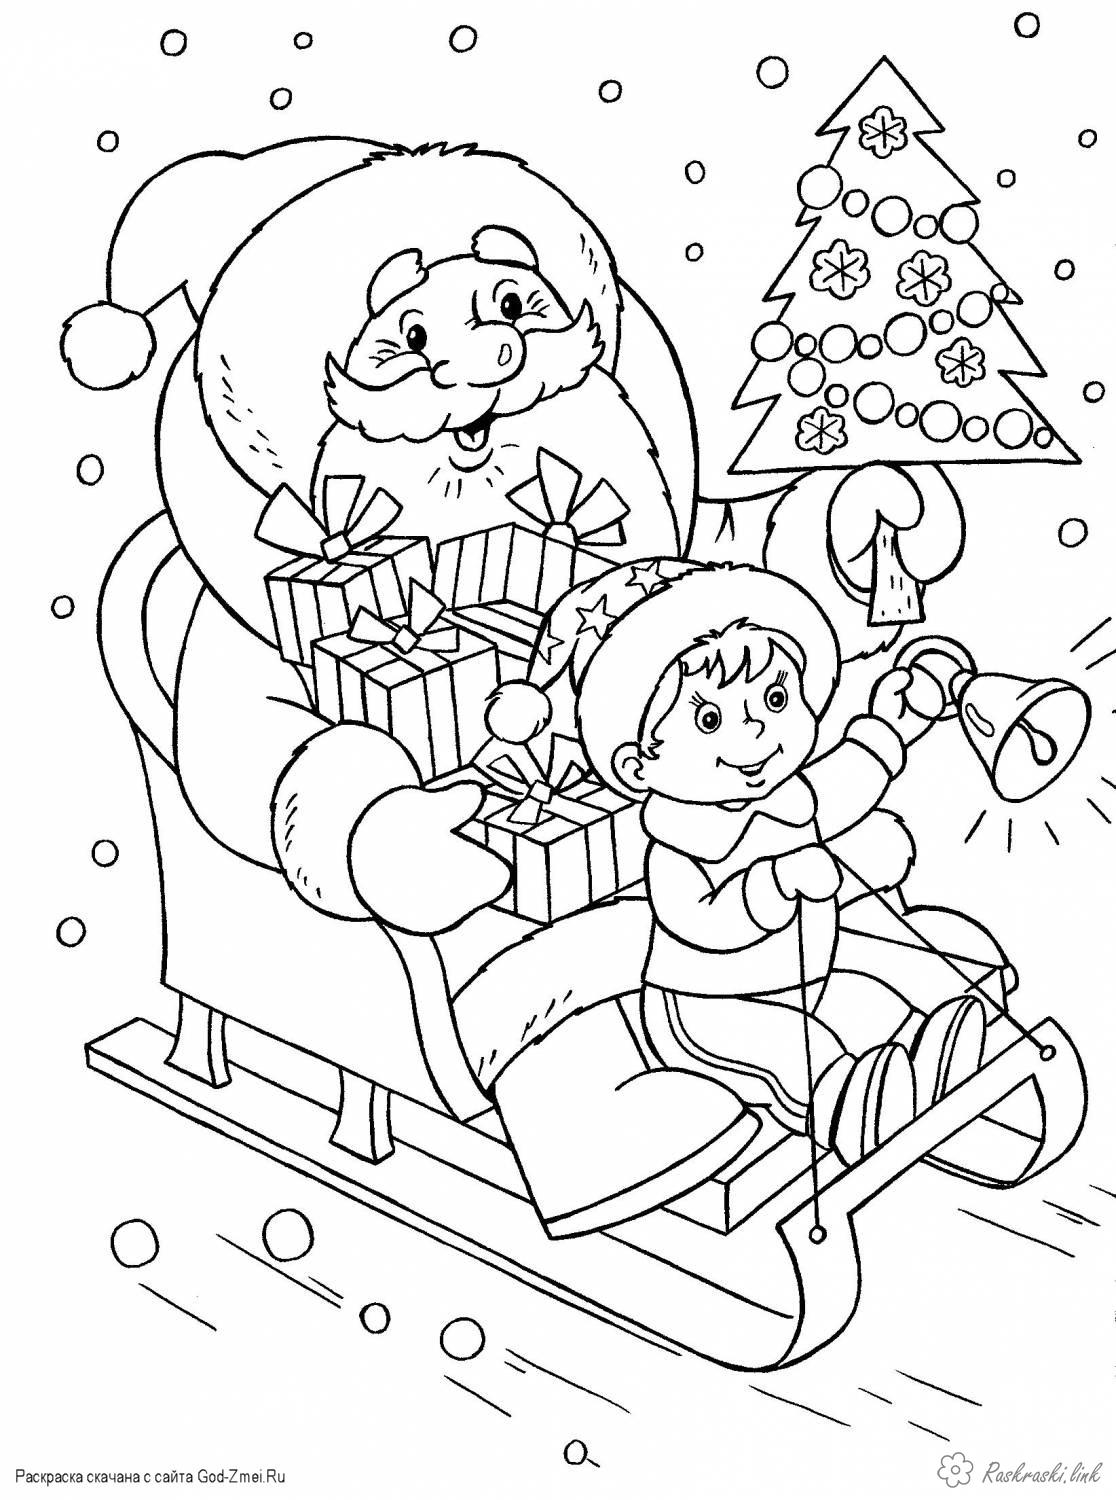 Раскраски Новый год Детская новогодняя раскраска, дед мороз на санях с подарками